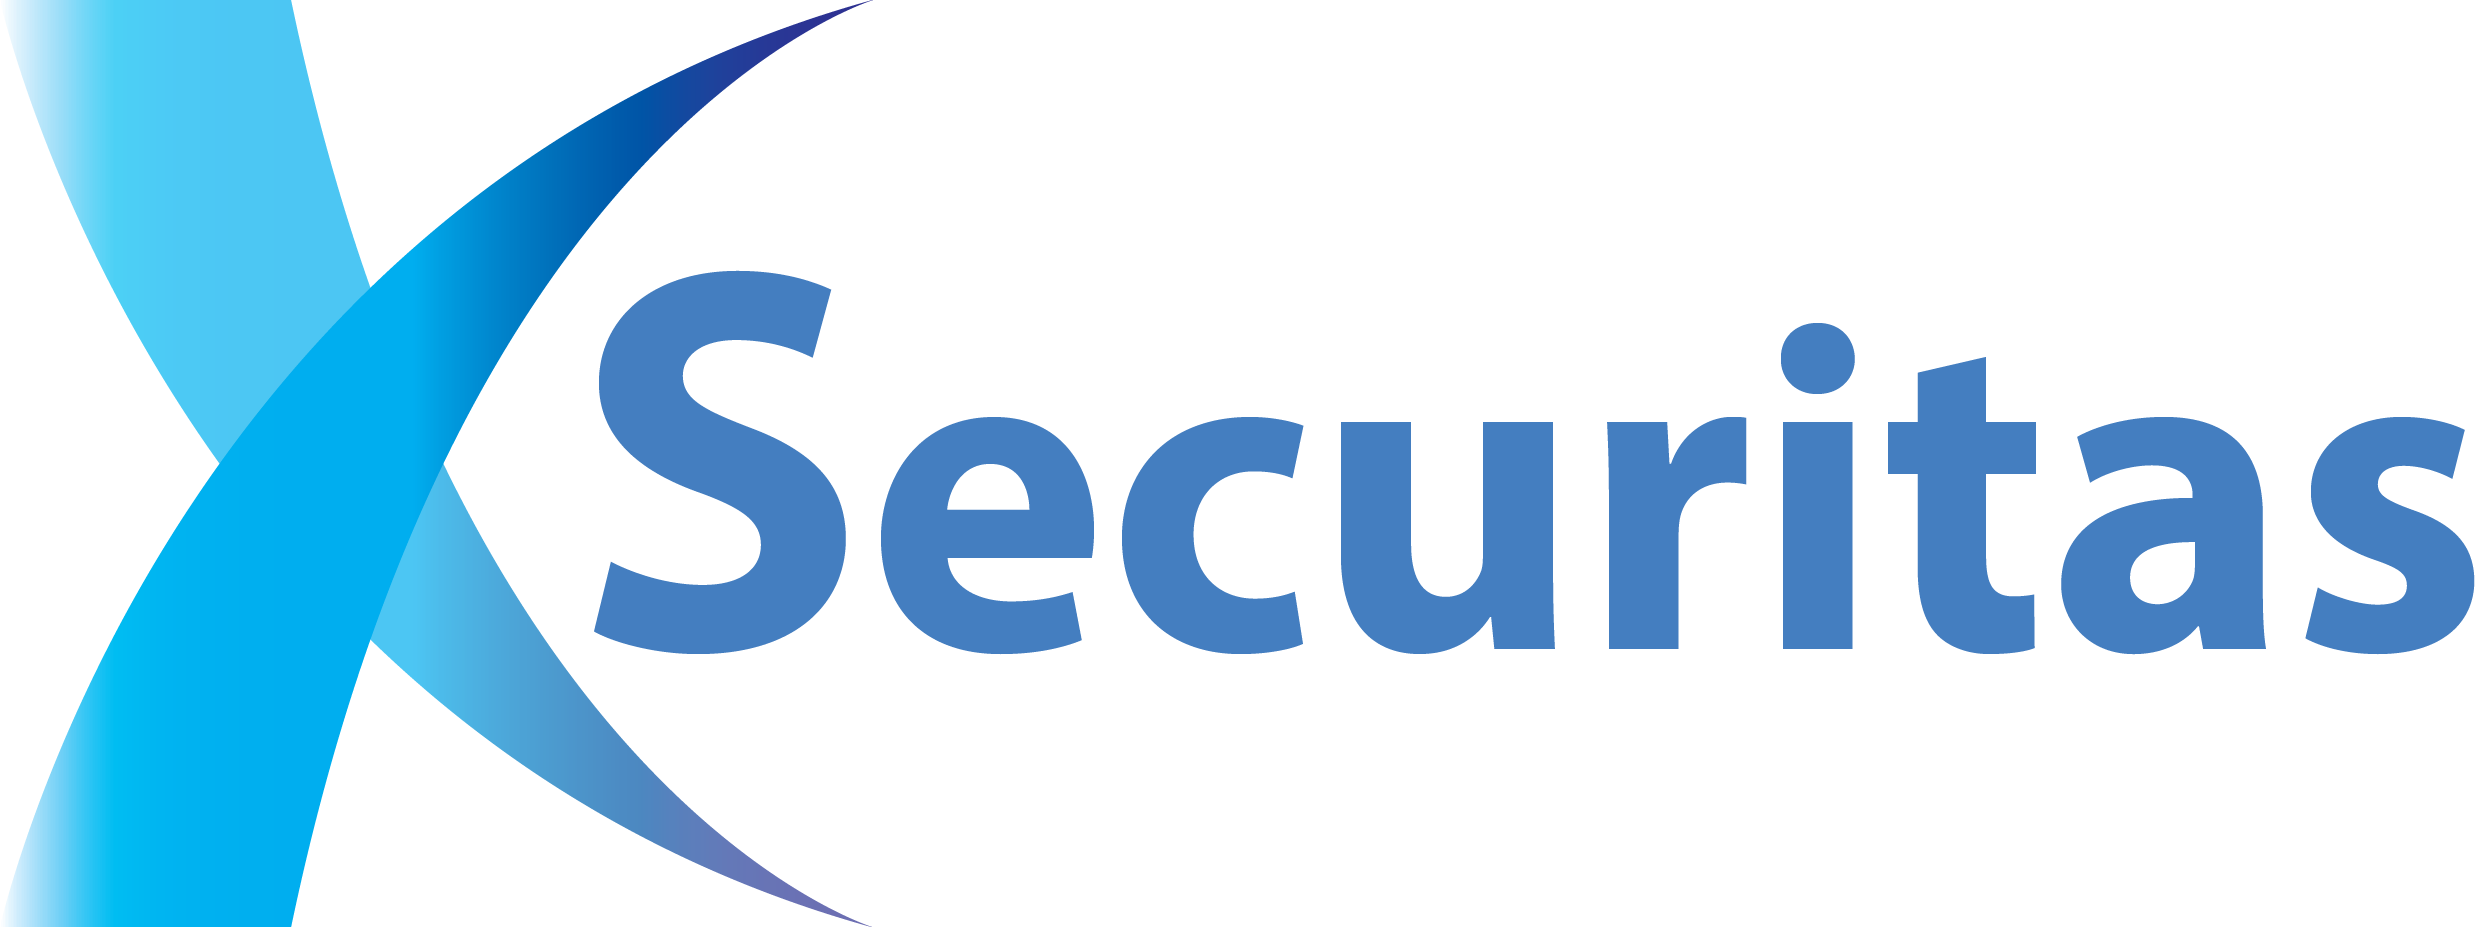 X-SECURITAS Logo